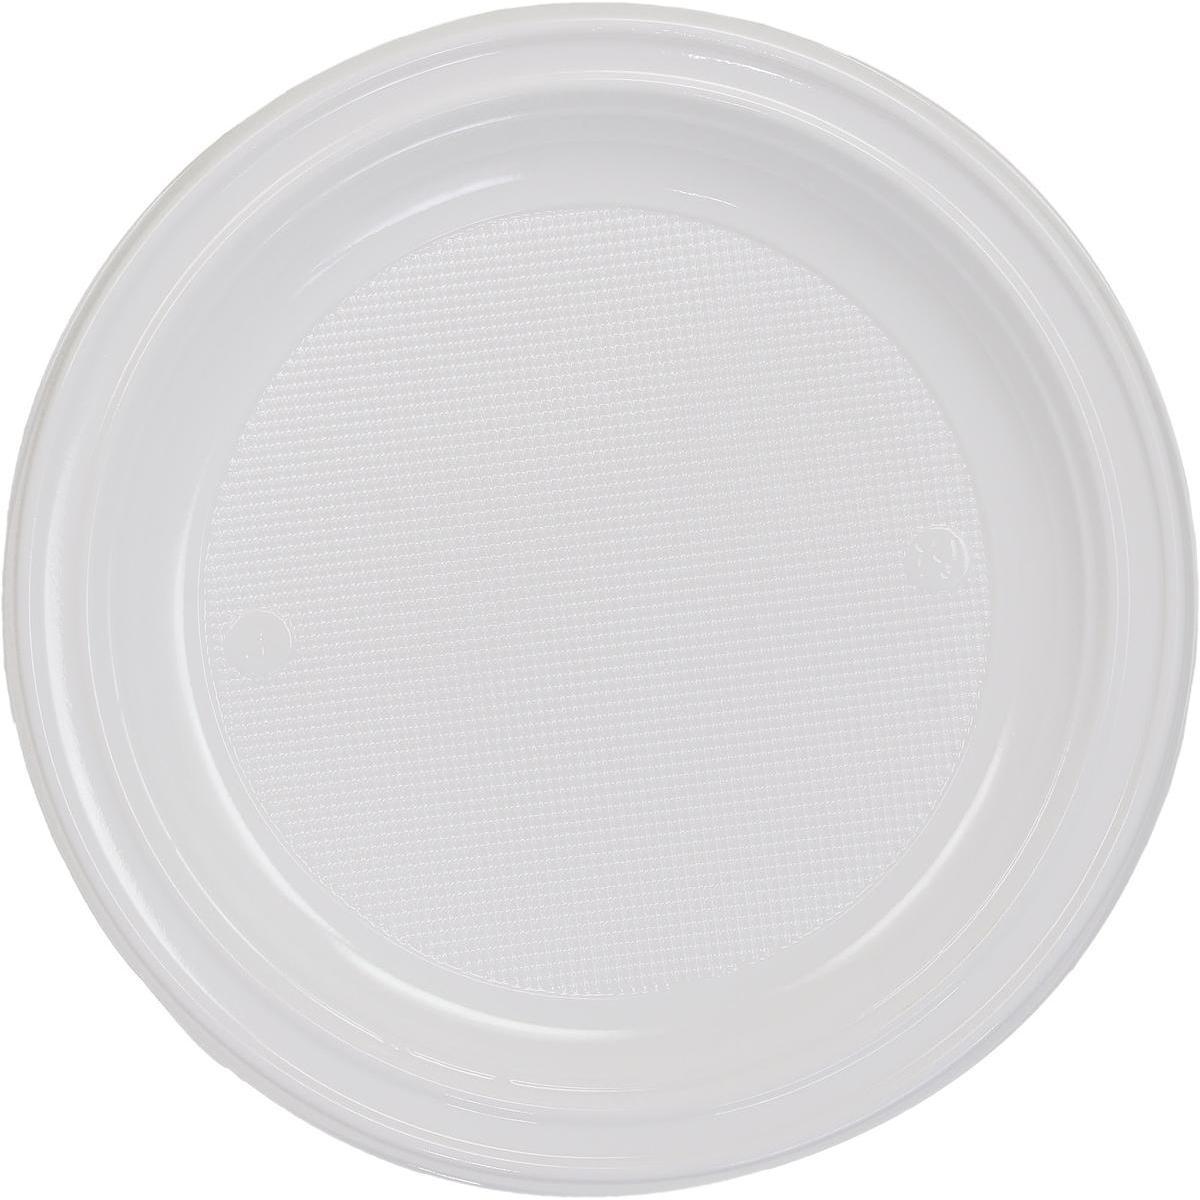 Lot de 100 assiettes Gappy en plastique - 20,5 cm - Polystyrène - Blanc